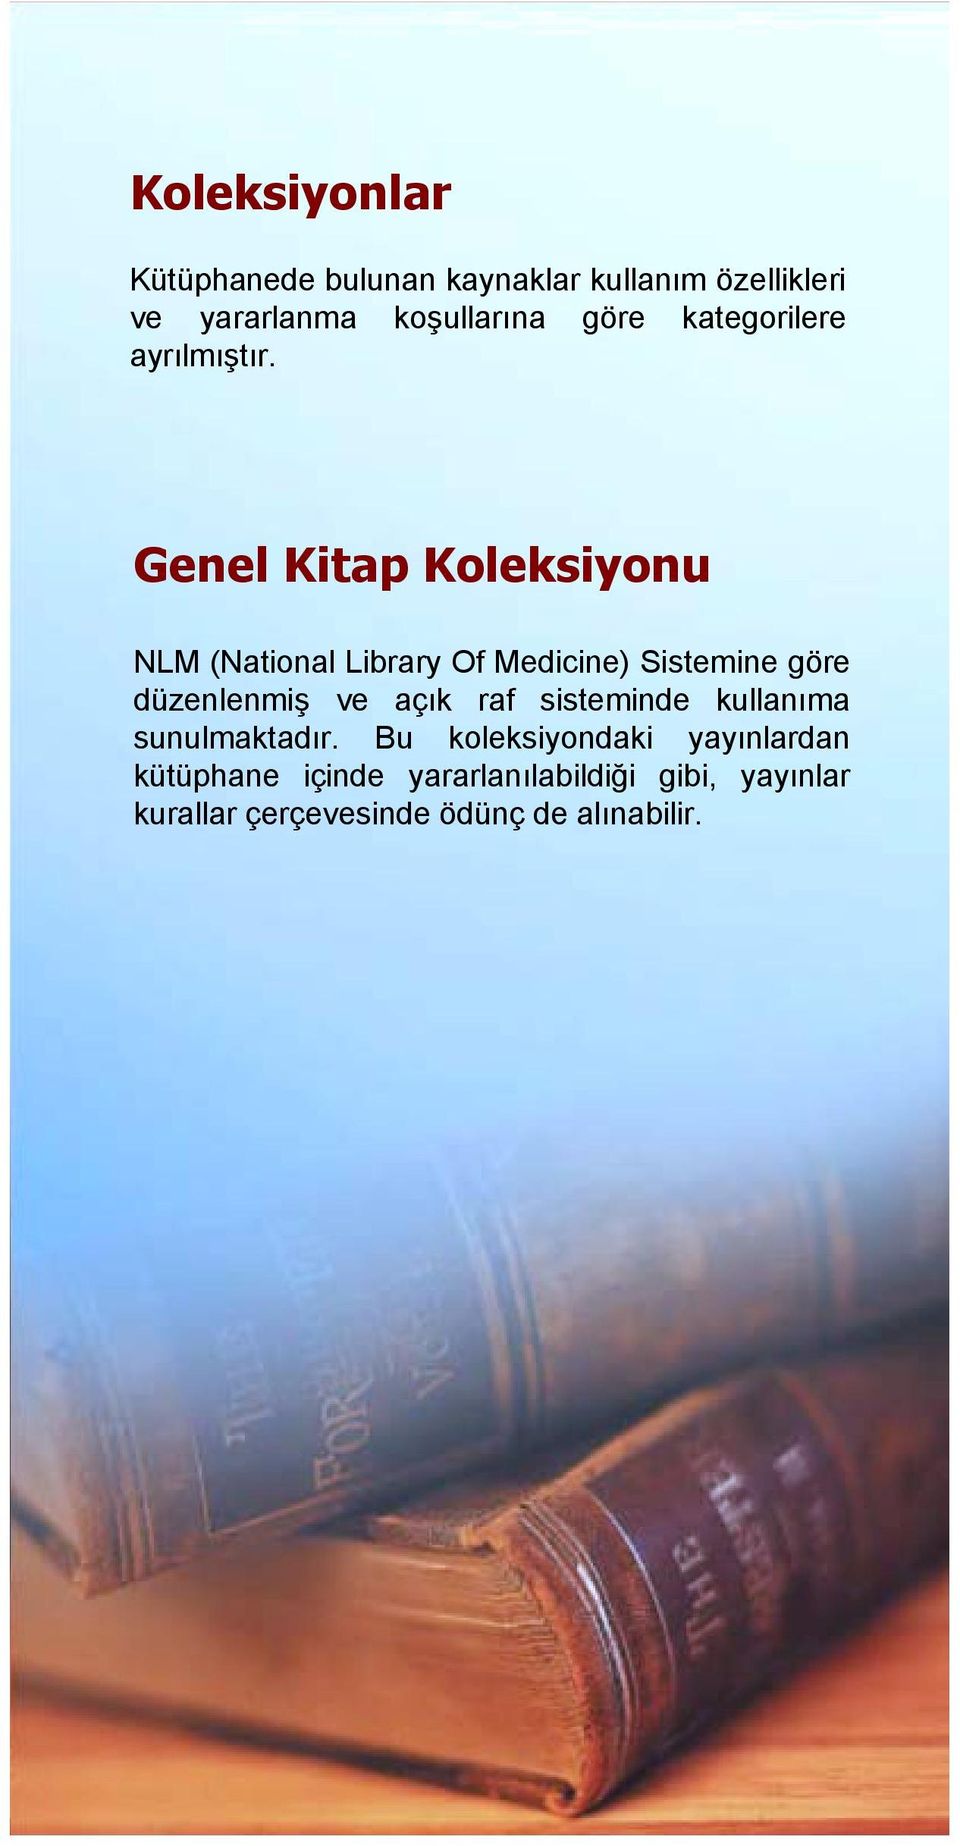 Genel Kitap Koleksiyonu NLM (National Library Of Medicine) Sistemine göre düzenlenmiş ve açõk